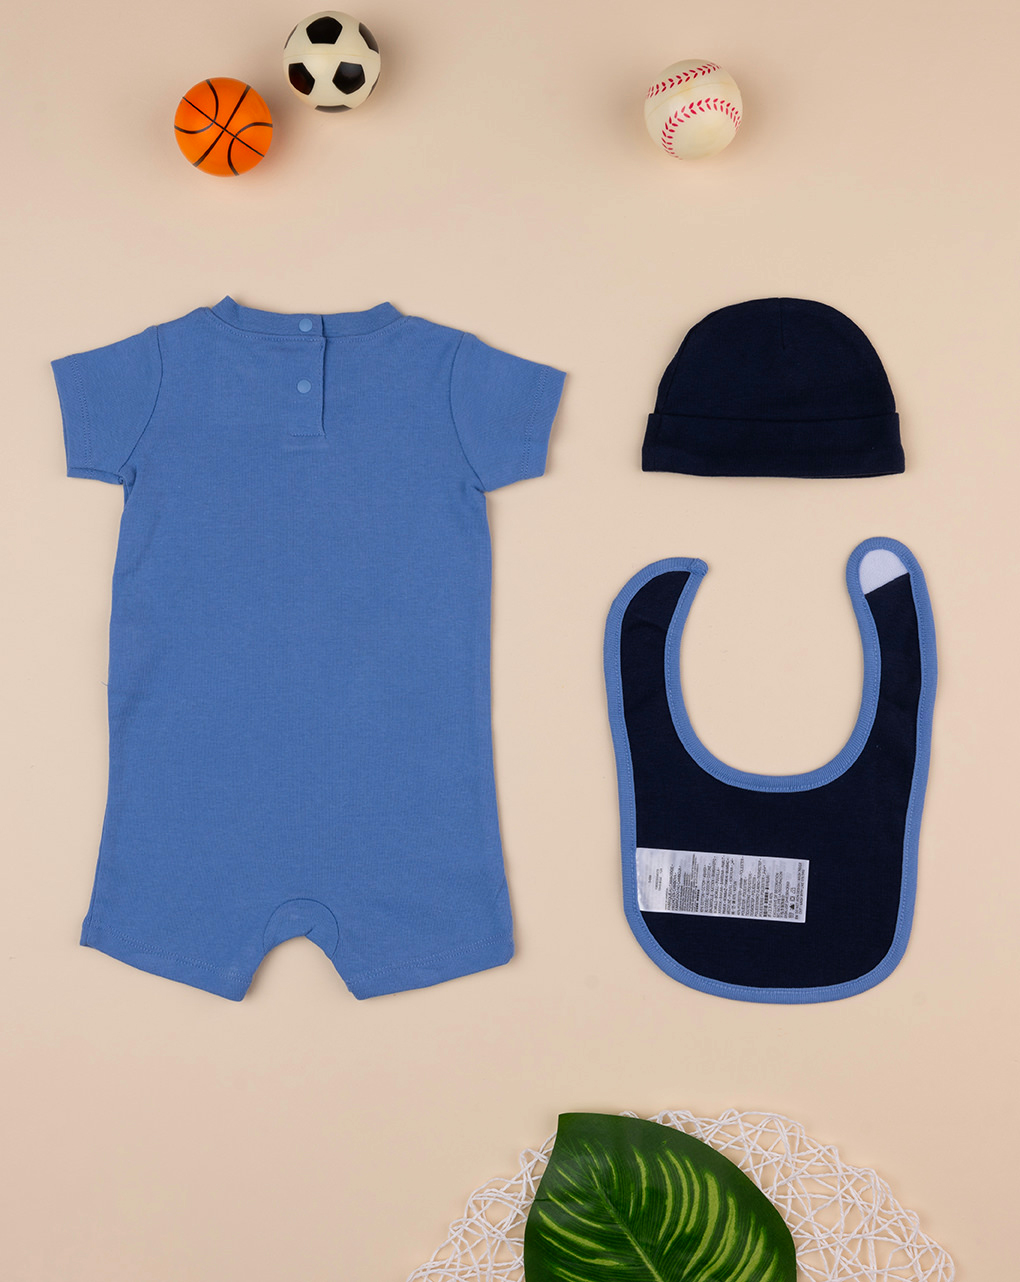 Nike αθλητικό σετ nn1049-bgz για νεογέννητο αγόρι - Nike